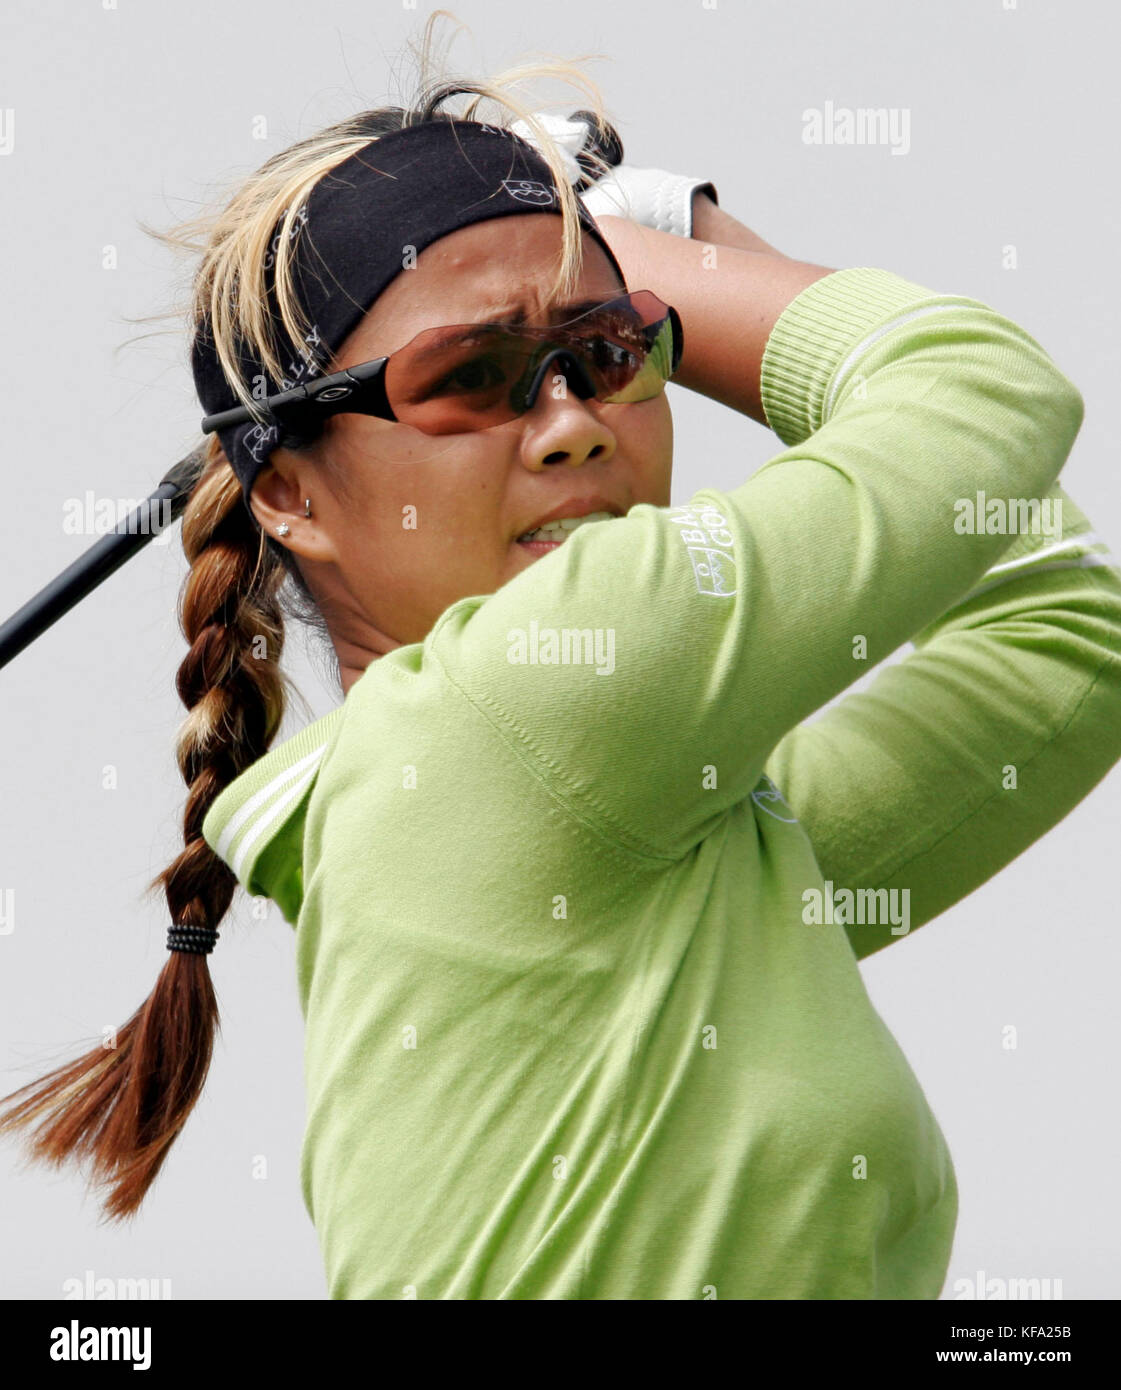 Jennifer Rosales, de las Filipinas, tiene éxitos del segundo tee durante la segunda ronda del Office Depot Championship de LPGA en el Trump National Golf Club en Rancho Palos Verdes, California, el sábado 1 de octubre de 2005. Foto de Francis Specker Foto de stock